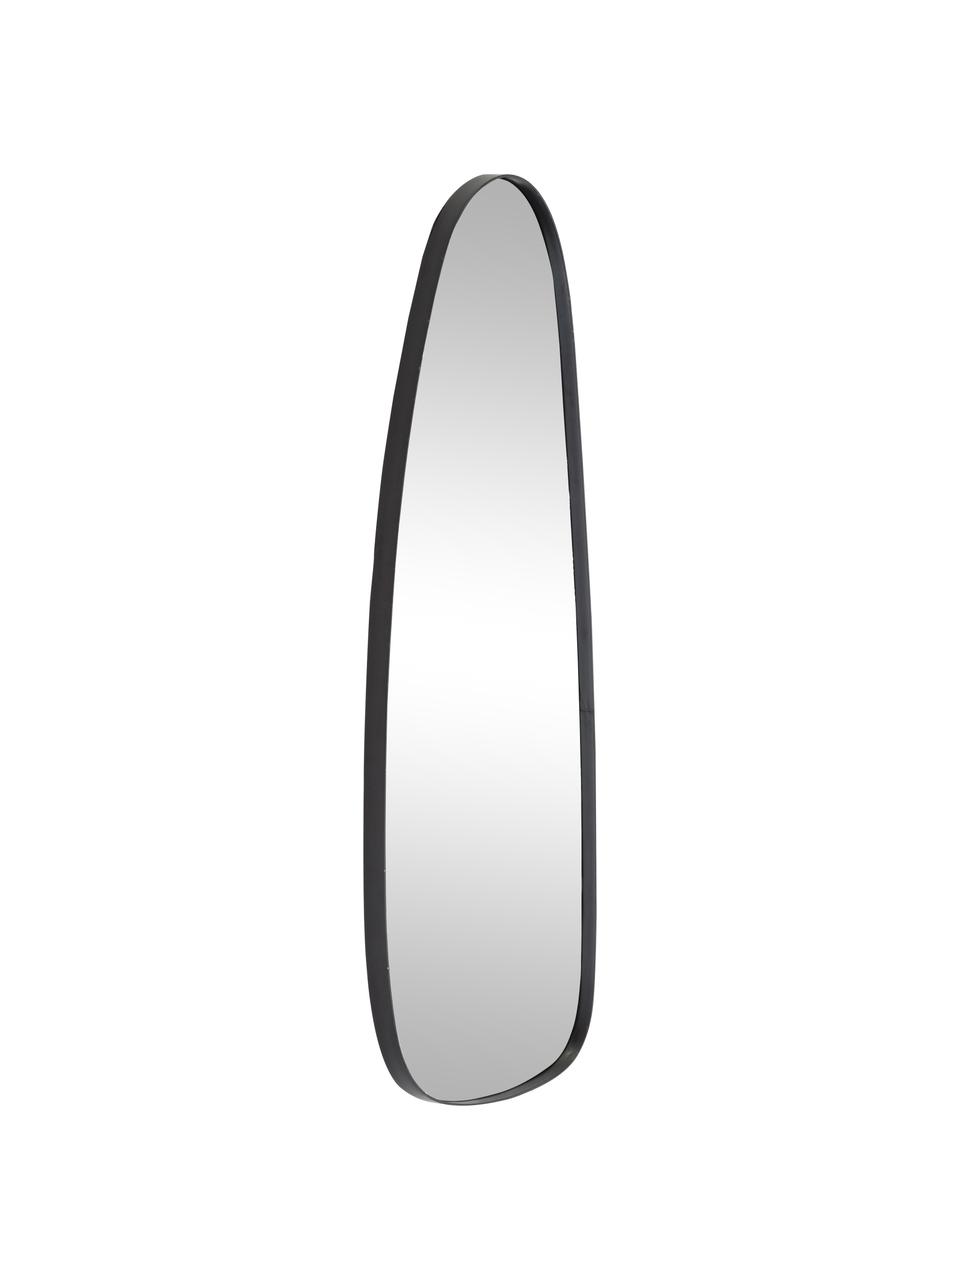 Ovaler Wandspiegel Codoll mit schwarzem Metallrahmen, Rahmen: Metall, lackiert, Spiegelfläche: Spiegelglas, Rahmen: SchwarzSpiegelfläche: Spiegelglas, 39 x 95 cm